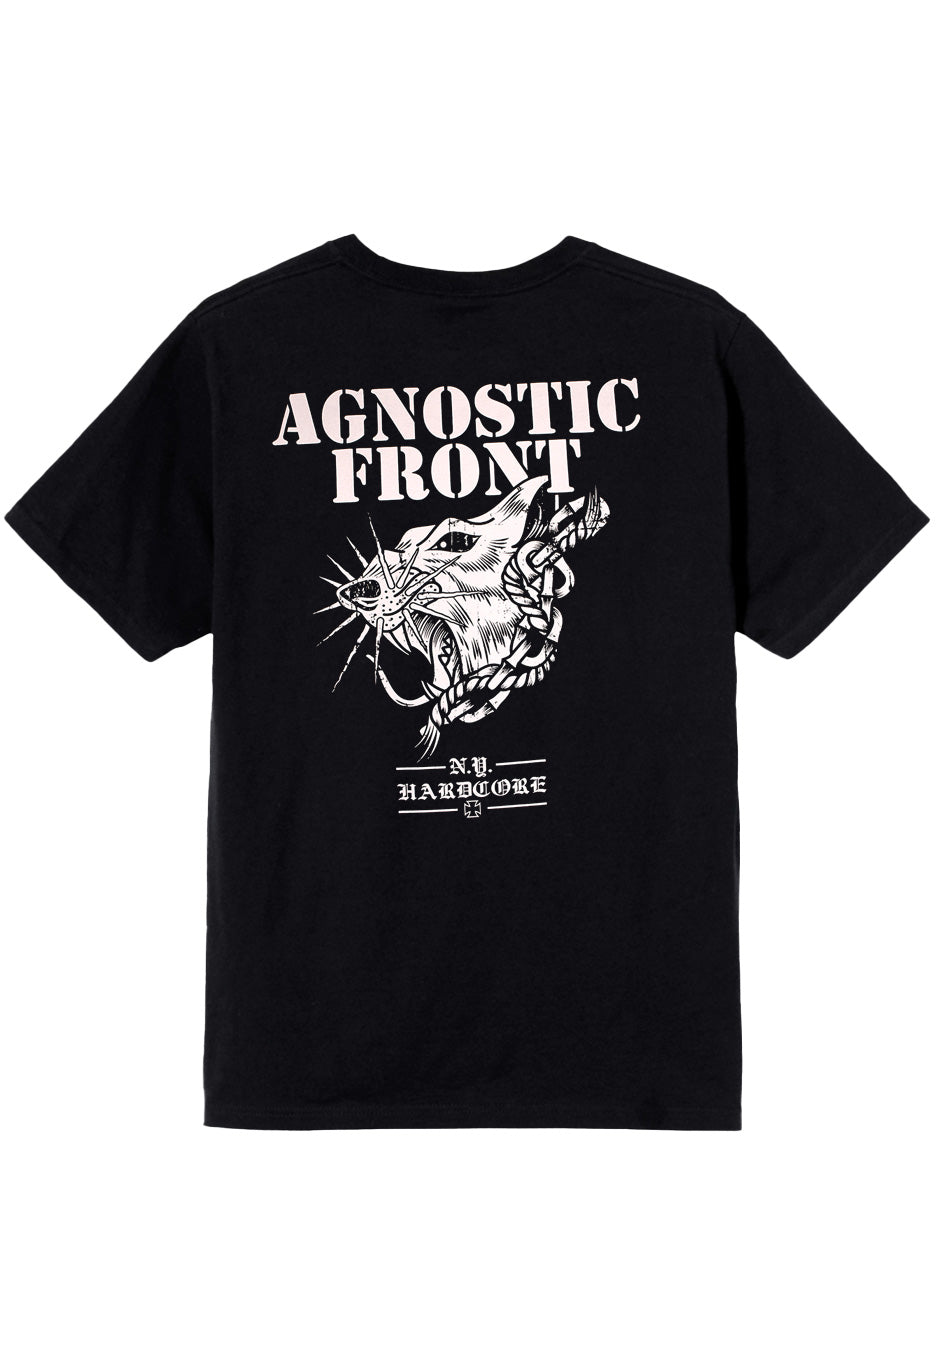 Agnostic Front - Rat - T-Shirt